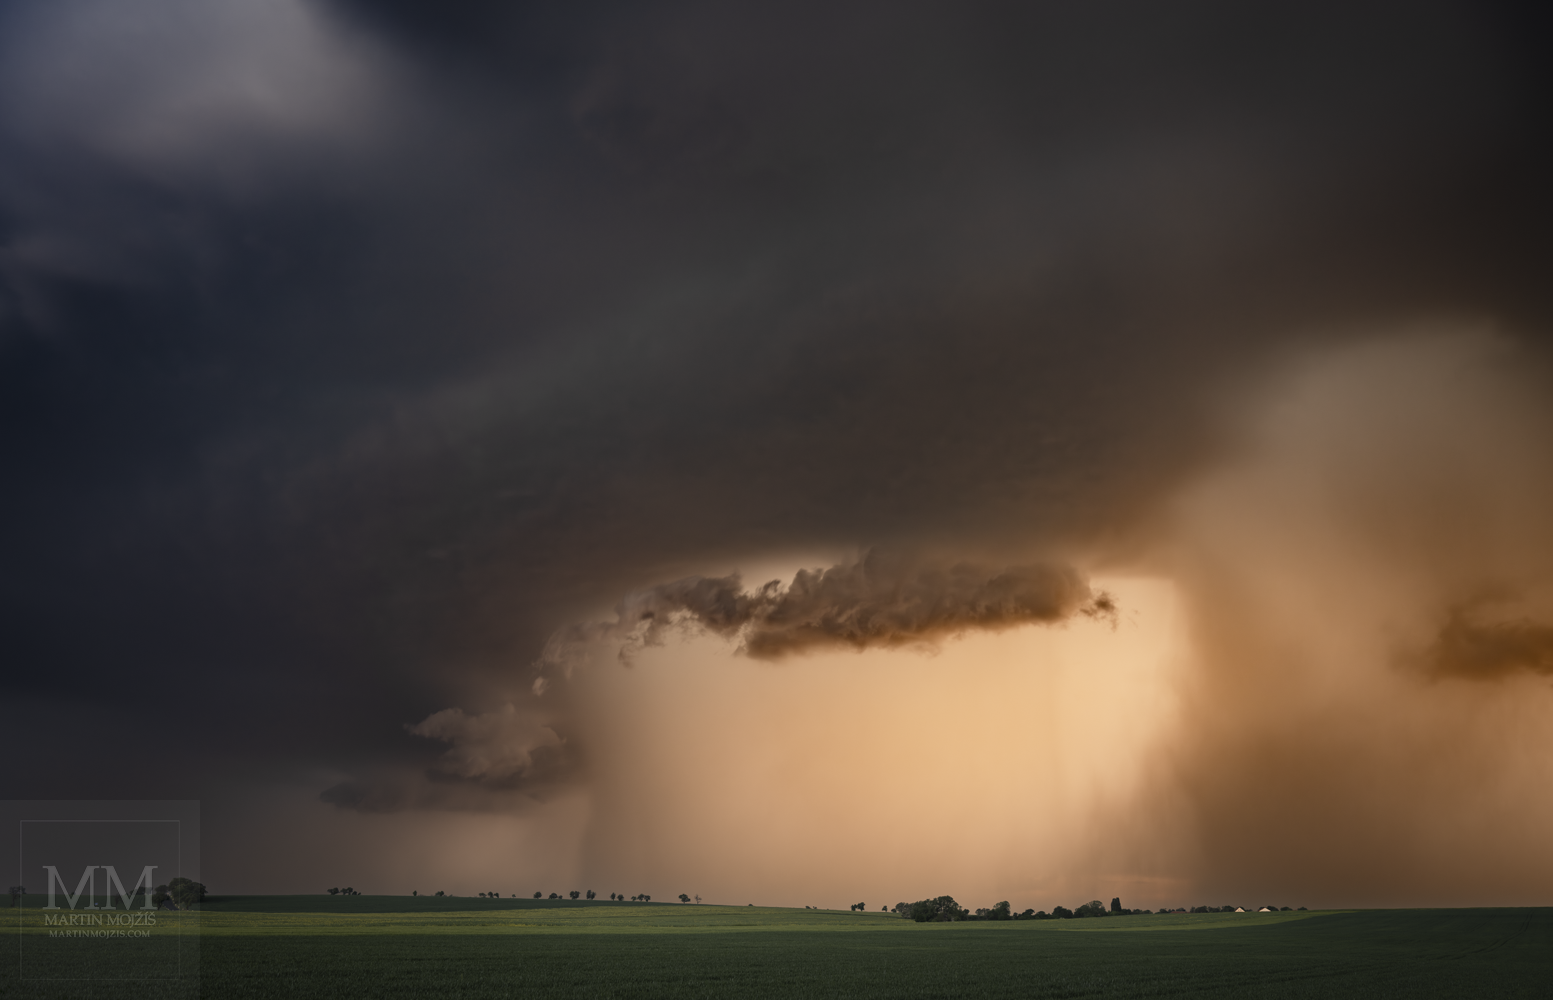 Supercela, supercelární bouře - bouřkový mrak a rotující proud vzduchu nad krajinou. Umělecká velkoformátová fotografie Supercela. Fotograf Martin Mojžíš.